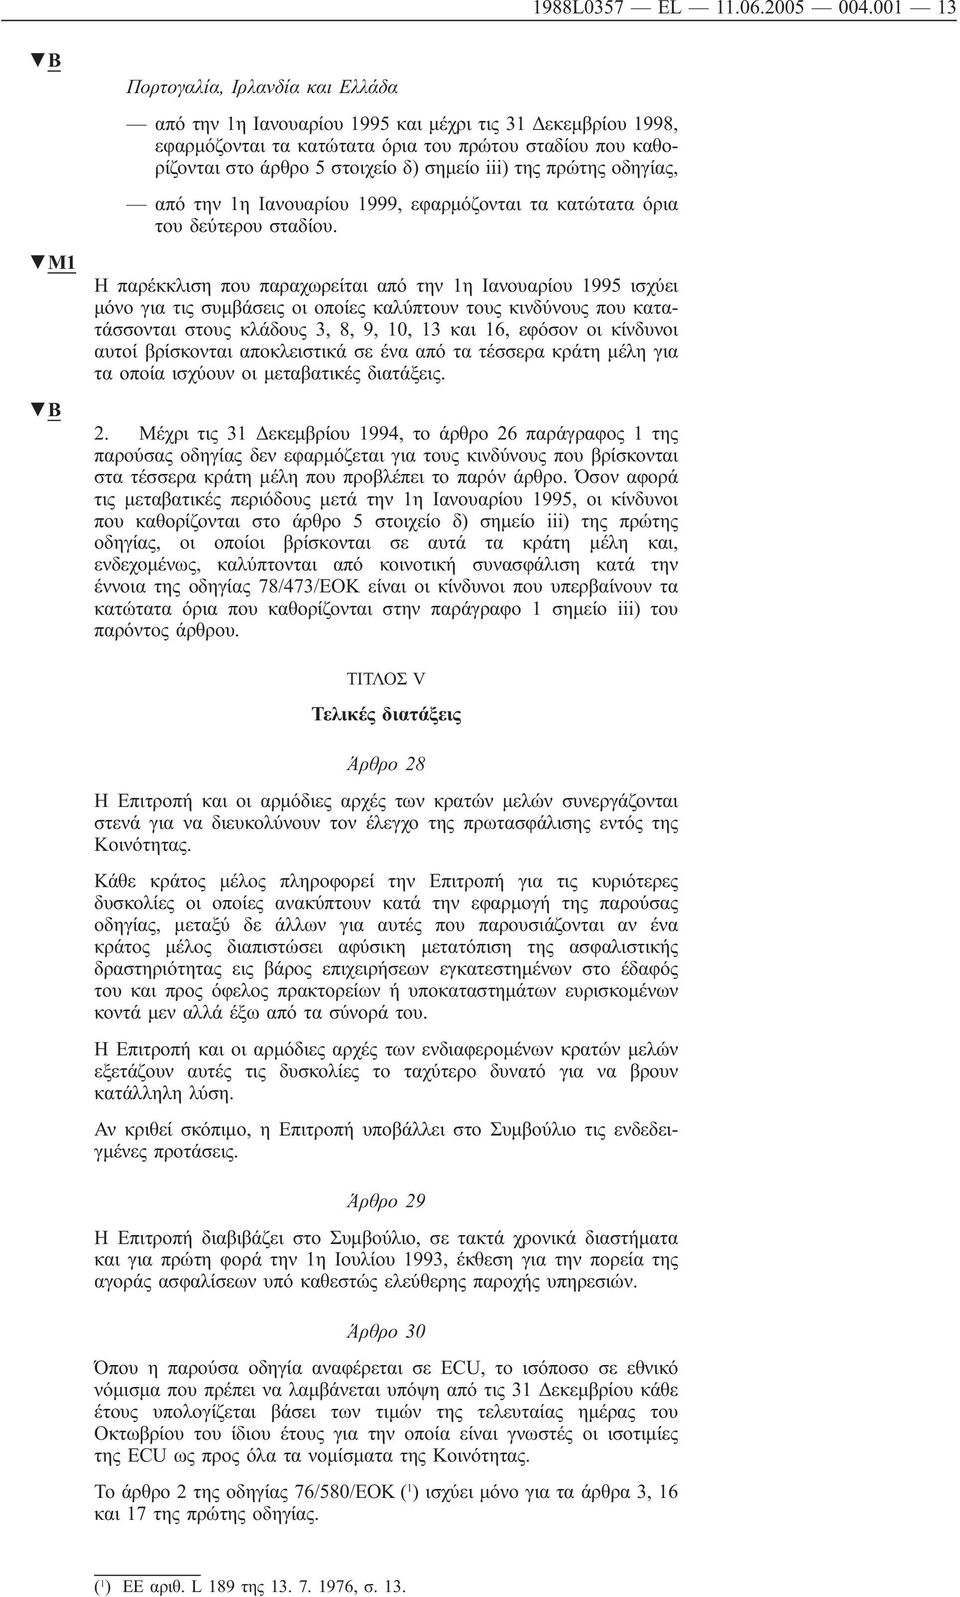 iii) της πρώτης οδηγίας, από την 1η Ιανουαρίου 1999, εφαρμόζονται τα κατώτατα όρια του δεύτερου σταδίου.